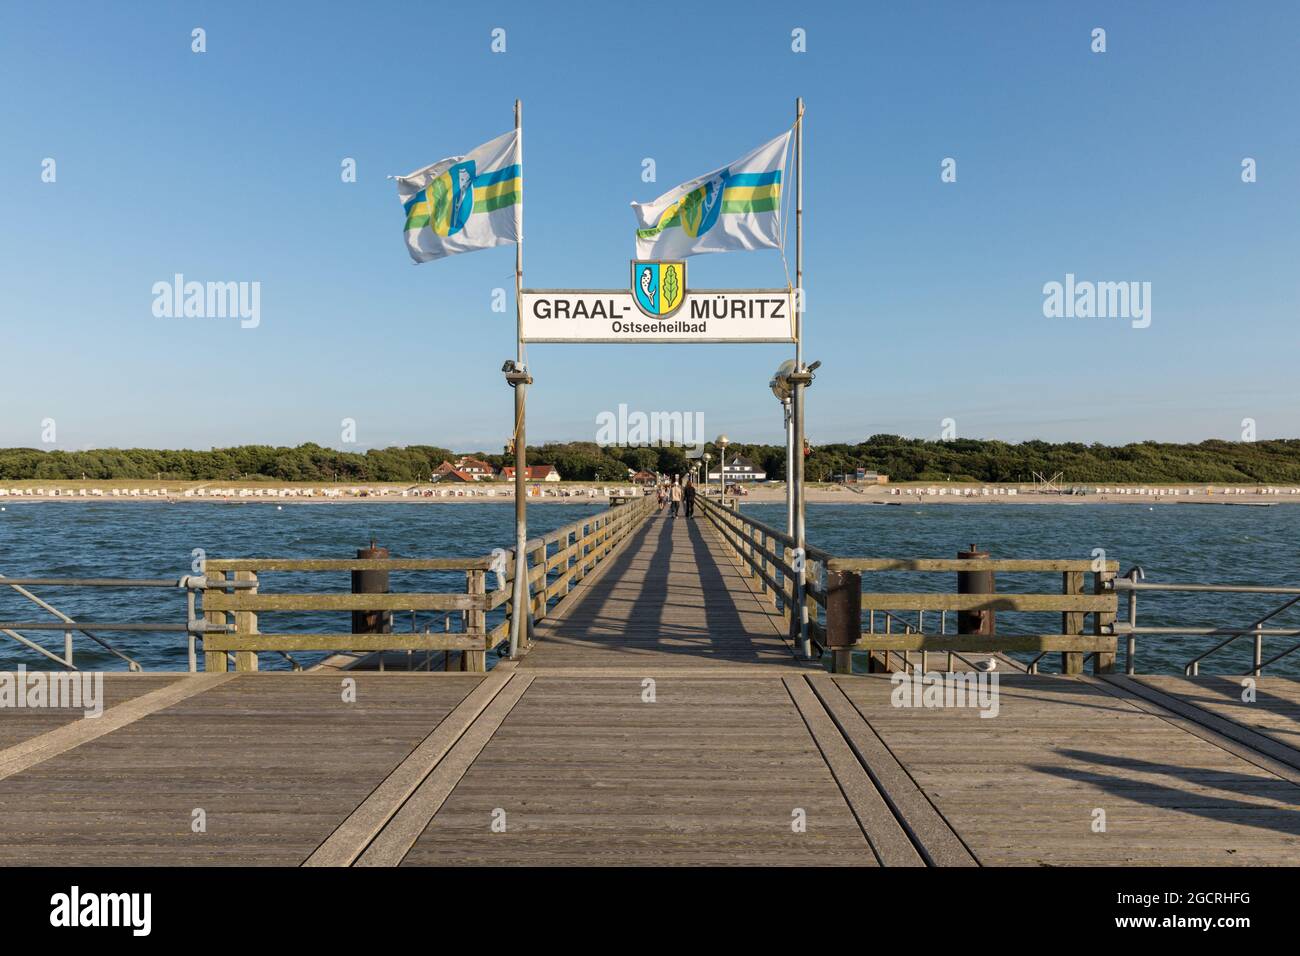 Pont de mer à Graal-Müritz sur la côte de la mer Baltique, vue de la pointe à la plage Banque D'Images